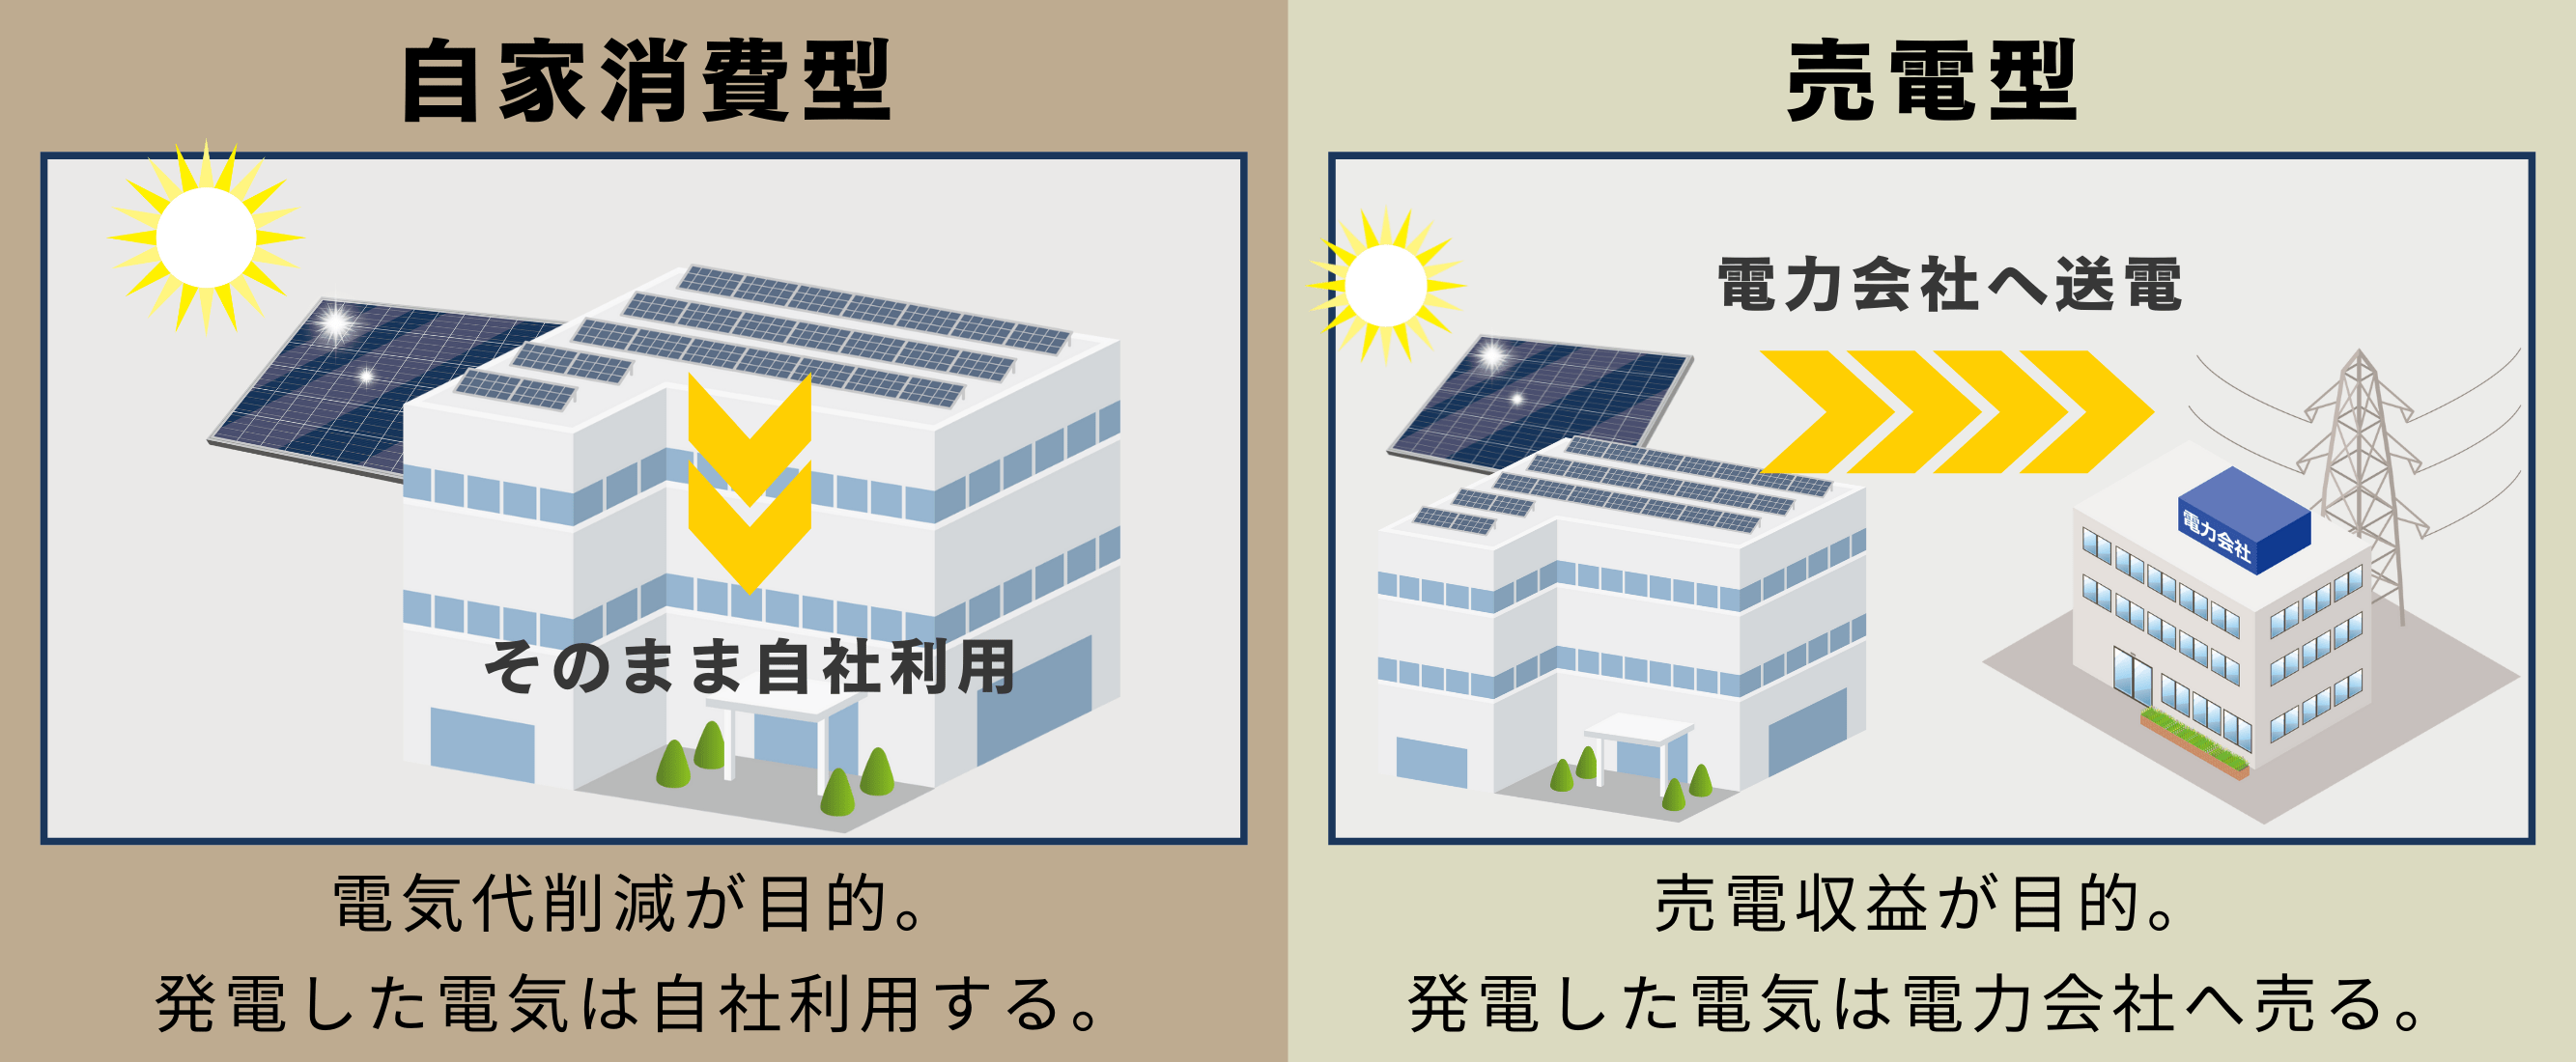 自家消費型太陽光発電と、売電型太陽光発電の違い